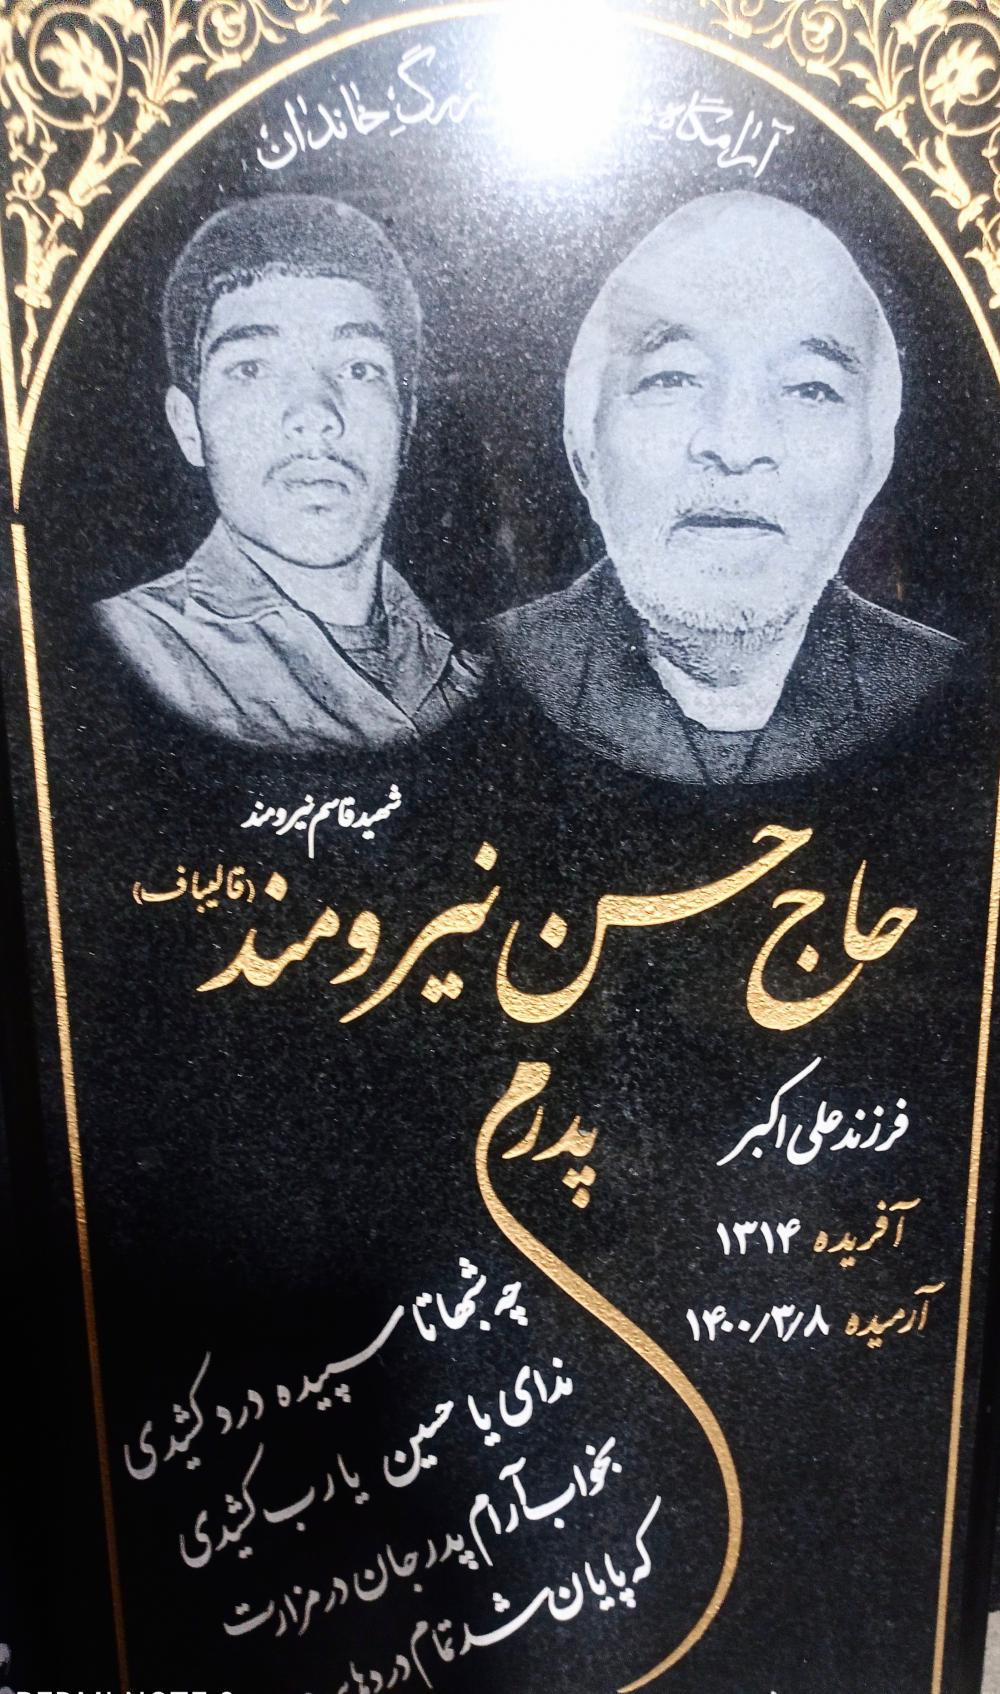 یادبود شادروان حسن نیرومند قالیباف